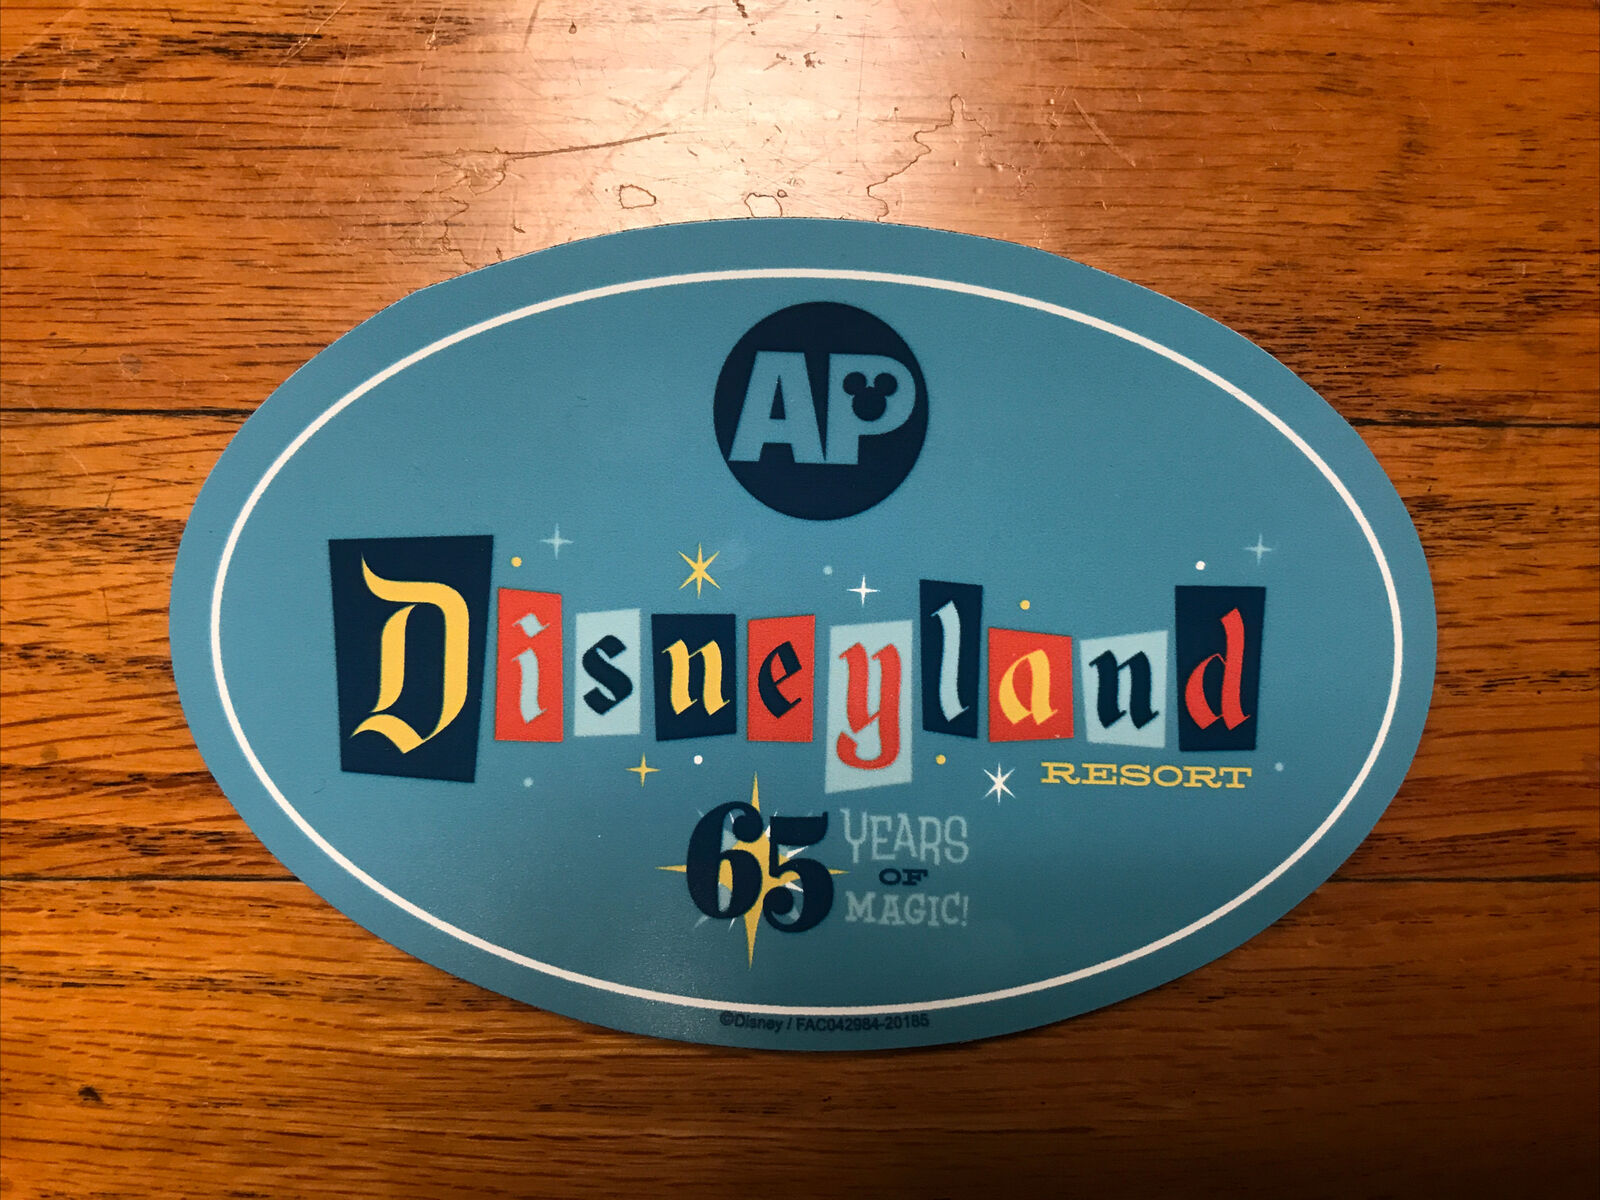 Disneyland Resort 65th Years of Magic AP Annual Pass Magnet 65th Anniversary New